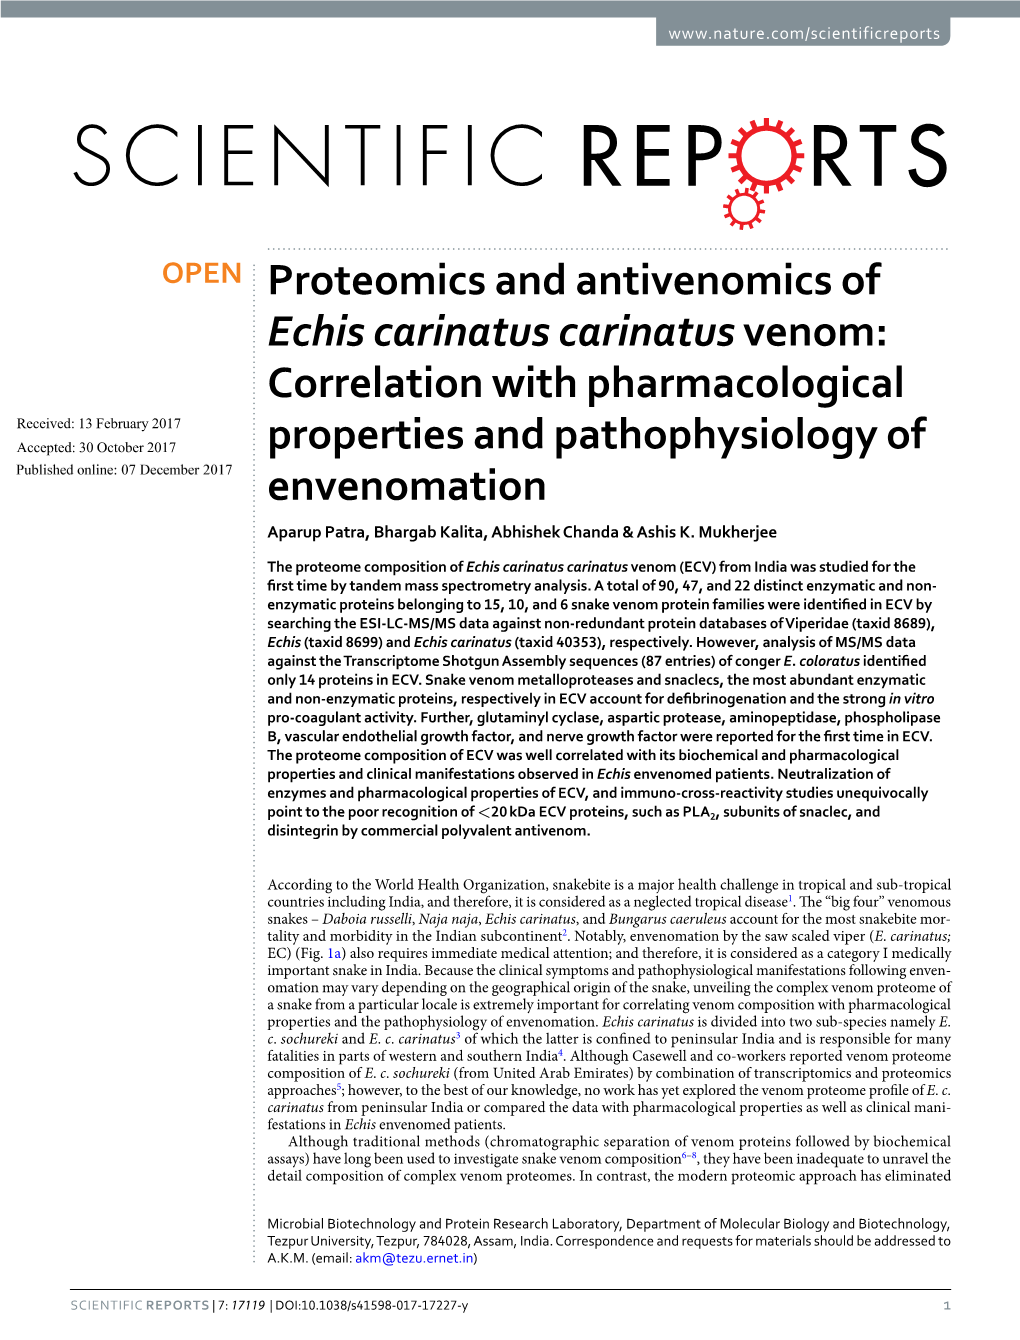 Proteomics and Antivenomics of Echis Carinatus Carinatusvenom